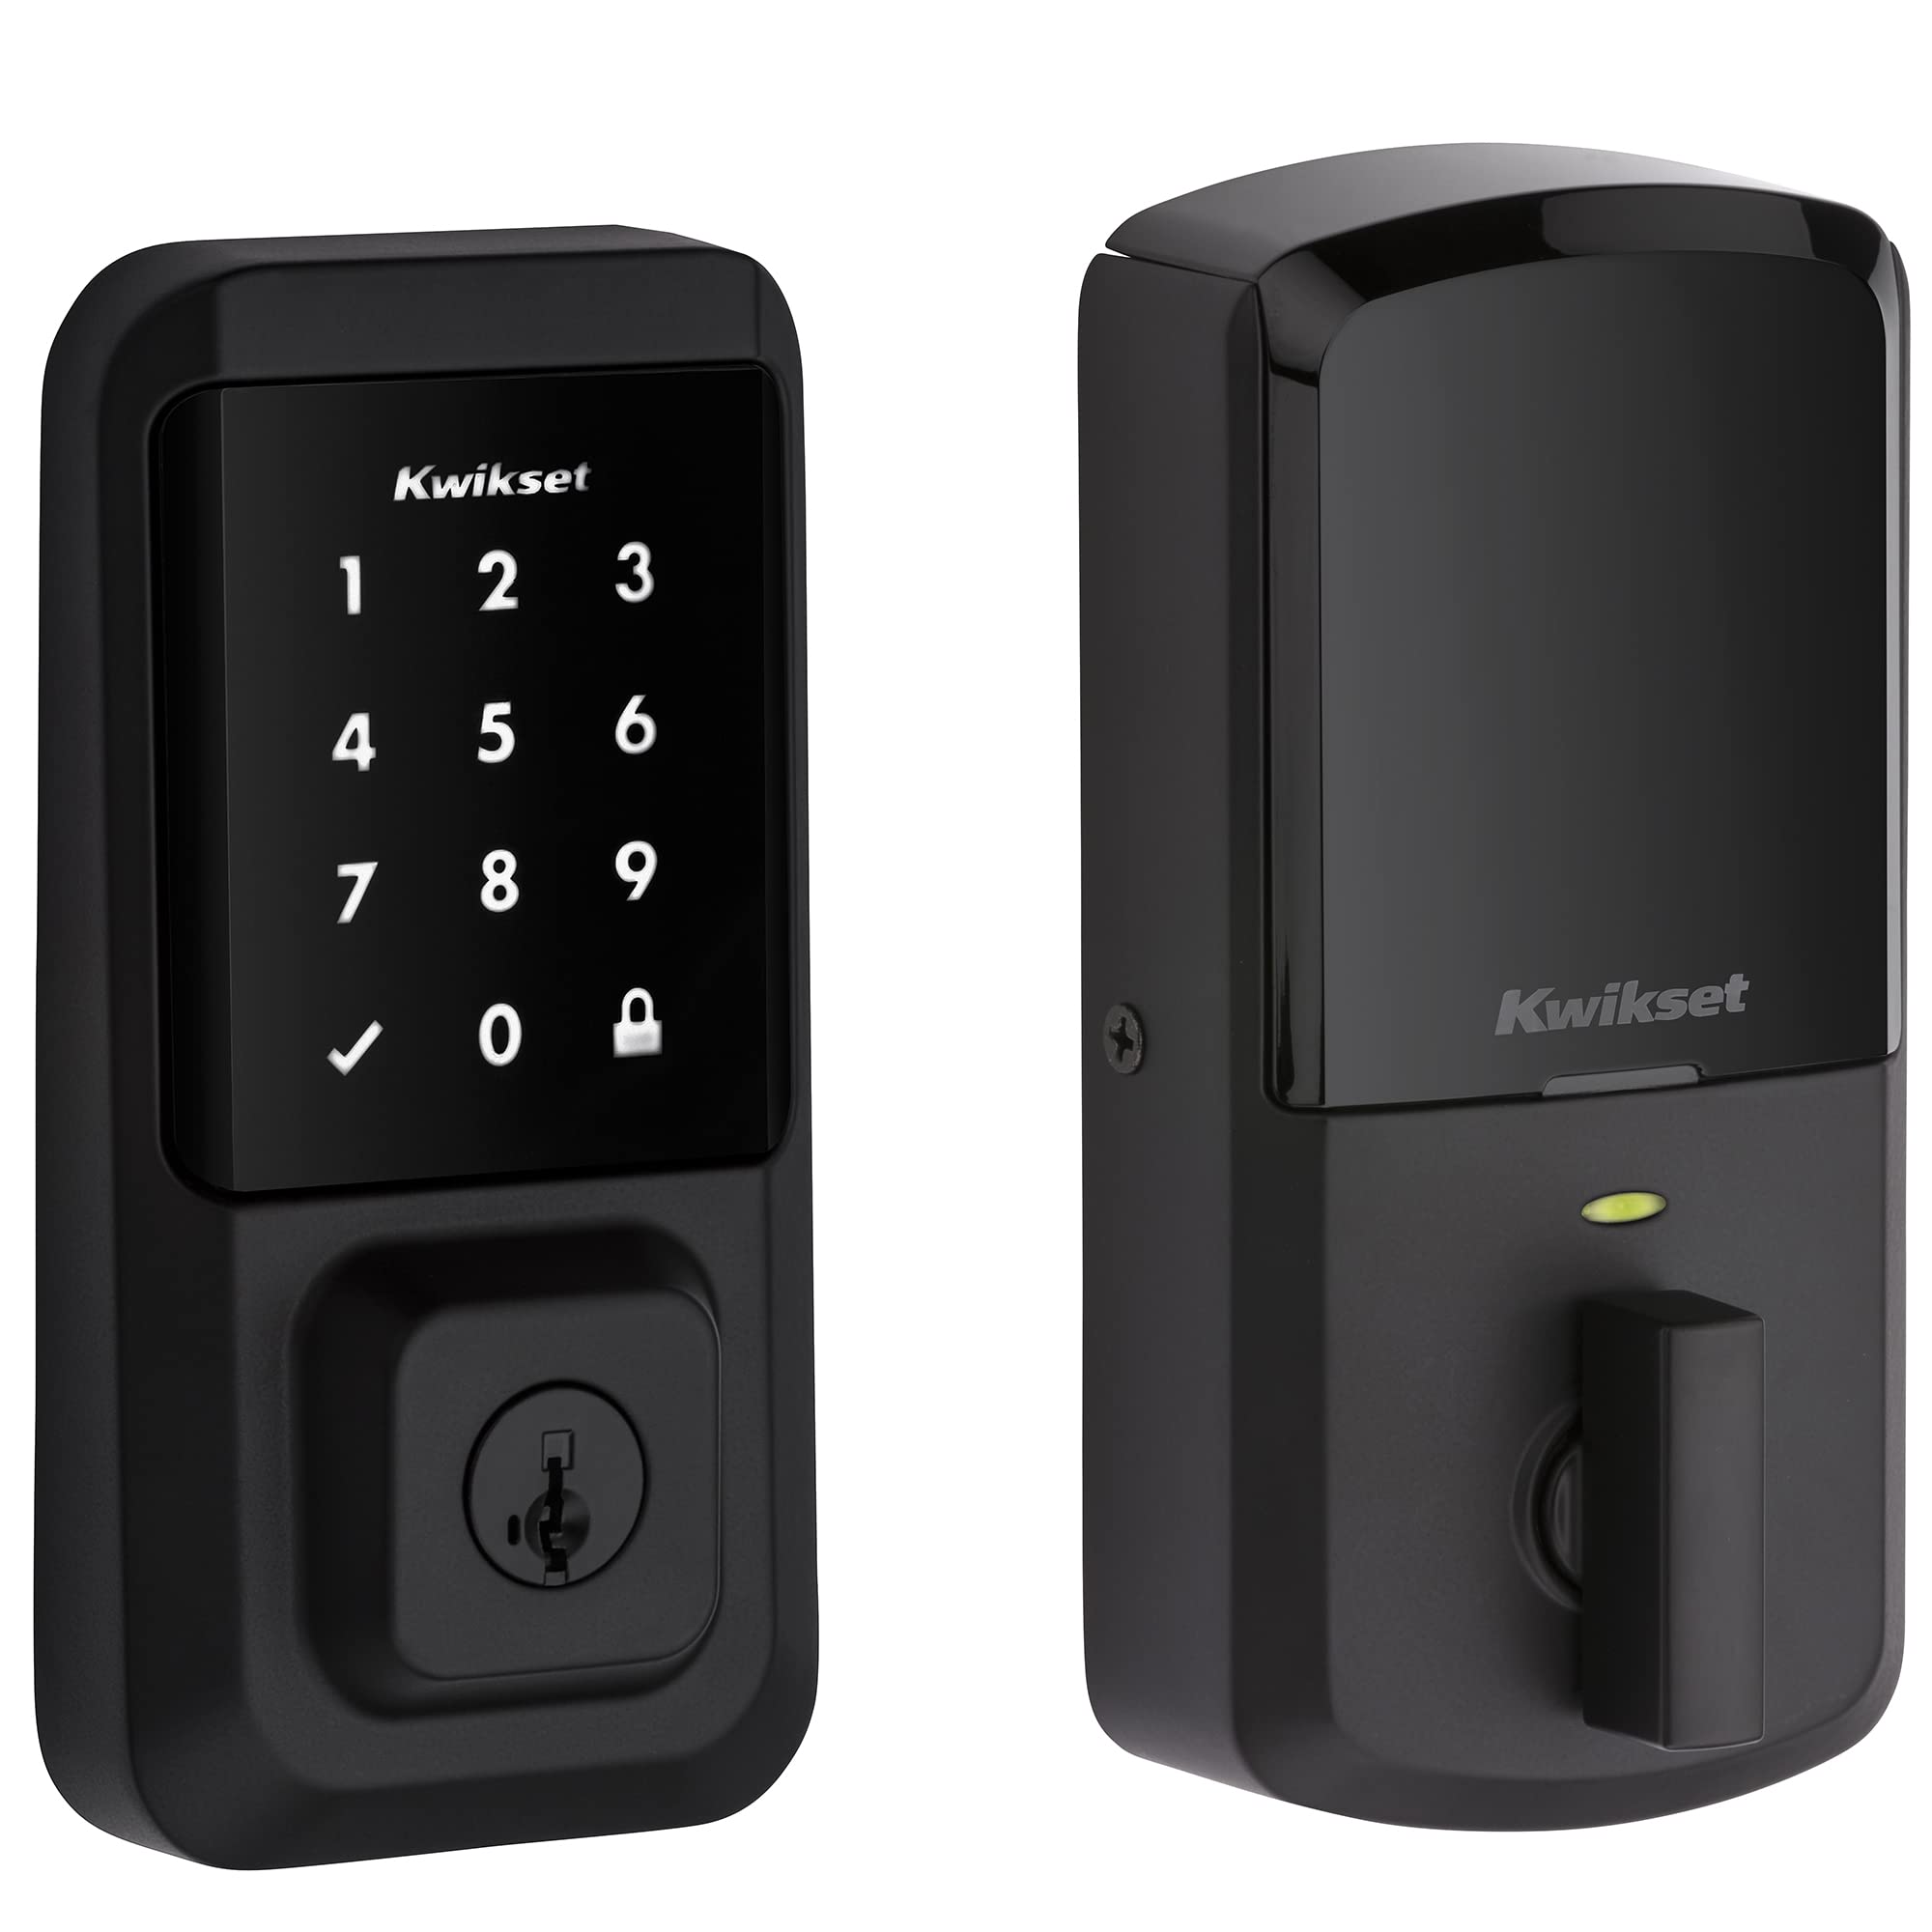 Kwikset 99390-001 Halo Wi-Fi Smart Lock Cerrojo electrónico con pantalla táctil para entrada sin llave con seguridad SmartKey